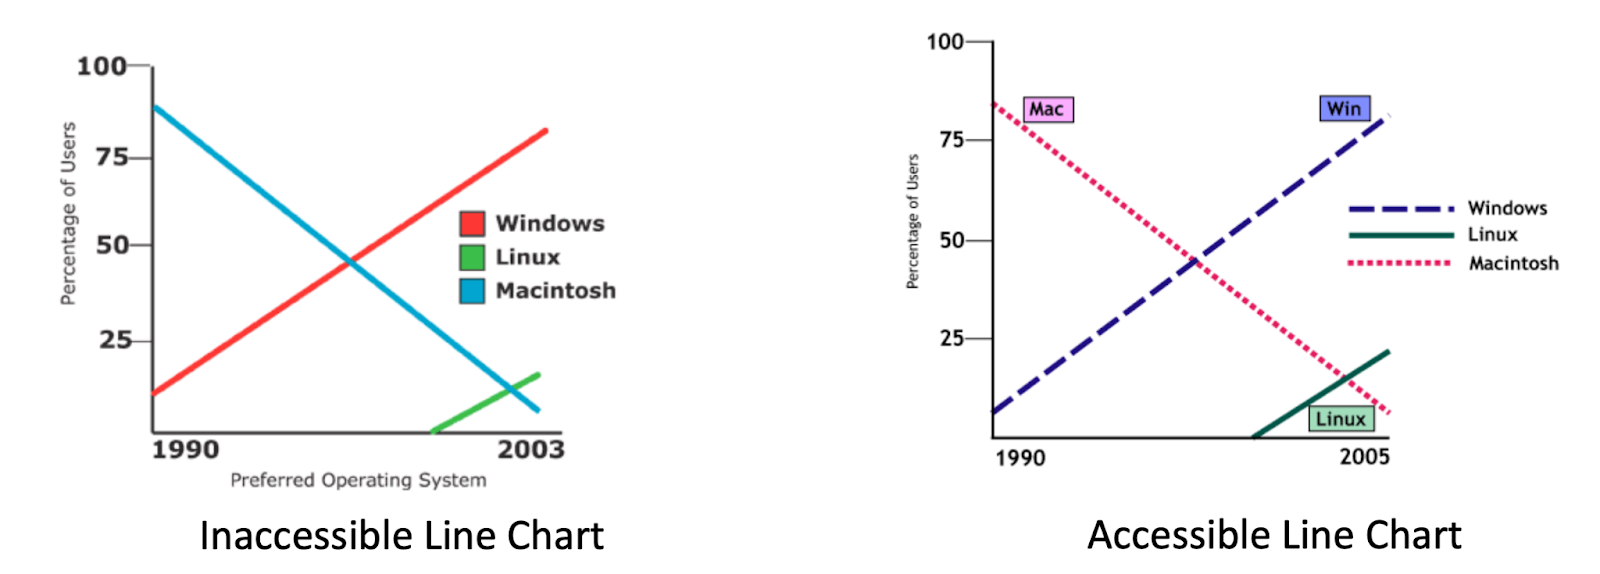 Dos gráficos de líneas con los mismos datos, que se muestran uno al lado del otro.  El primero está encima del encabezado 'Gráfico de líneas inaccesibles'.  El segundo aparece encima del encabezado "Gráfico de líneas accesibles".  Ambos gráficos se titulan 'Sistema operativo preferido'.  Los ejes X muestran un rango de años que comienza con 1990 y termina con 2003;  el eje Y está etiquetado como "Porcentaje de usuarios" y va de 0 a 100. Aparecen tres líneas en cada gráfico.  La primera línea, “Windows”, va desde alrededor del 10 % de los usuarios en 1990 hasta alrededor del 85 % de los usuarios en 2003. La segunda línea, Linux, comienza en 0 % alrededor de 1999 y sube a alrededor del 10 % en 2003. La tercera línea, Macintosh, comienza en 85% en 1990 y cae a cerca de 5% en 2003.